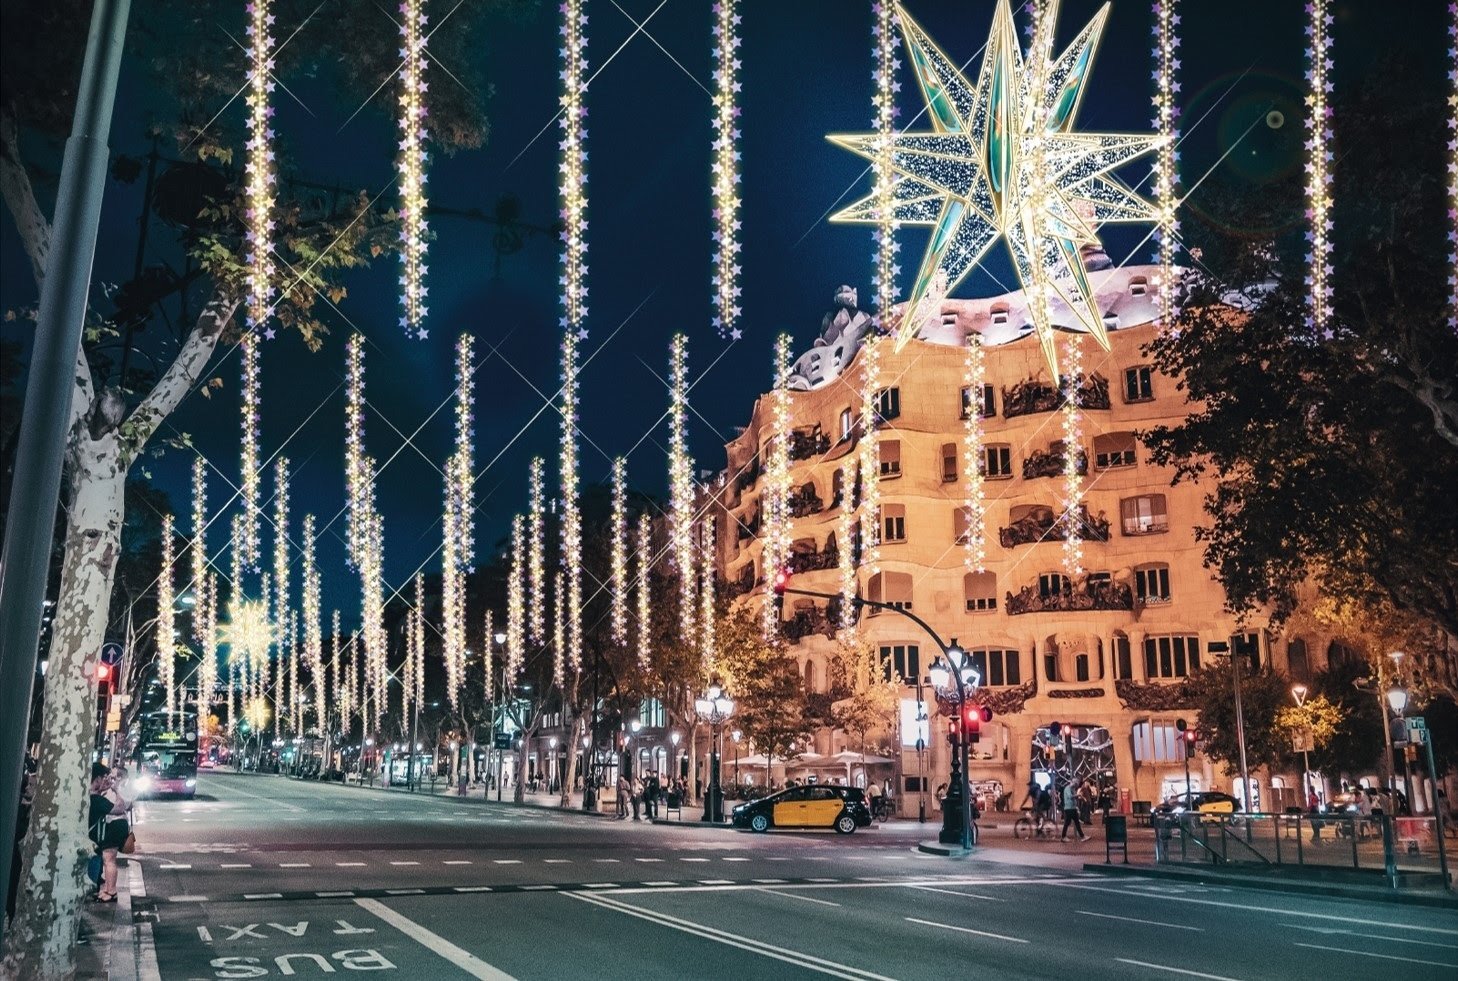 Els llums de Nadal del passeig de Gràcia s’inspiren en l’estel de la Sagrada Família